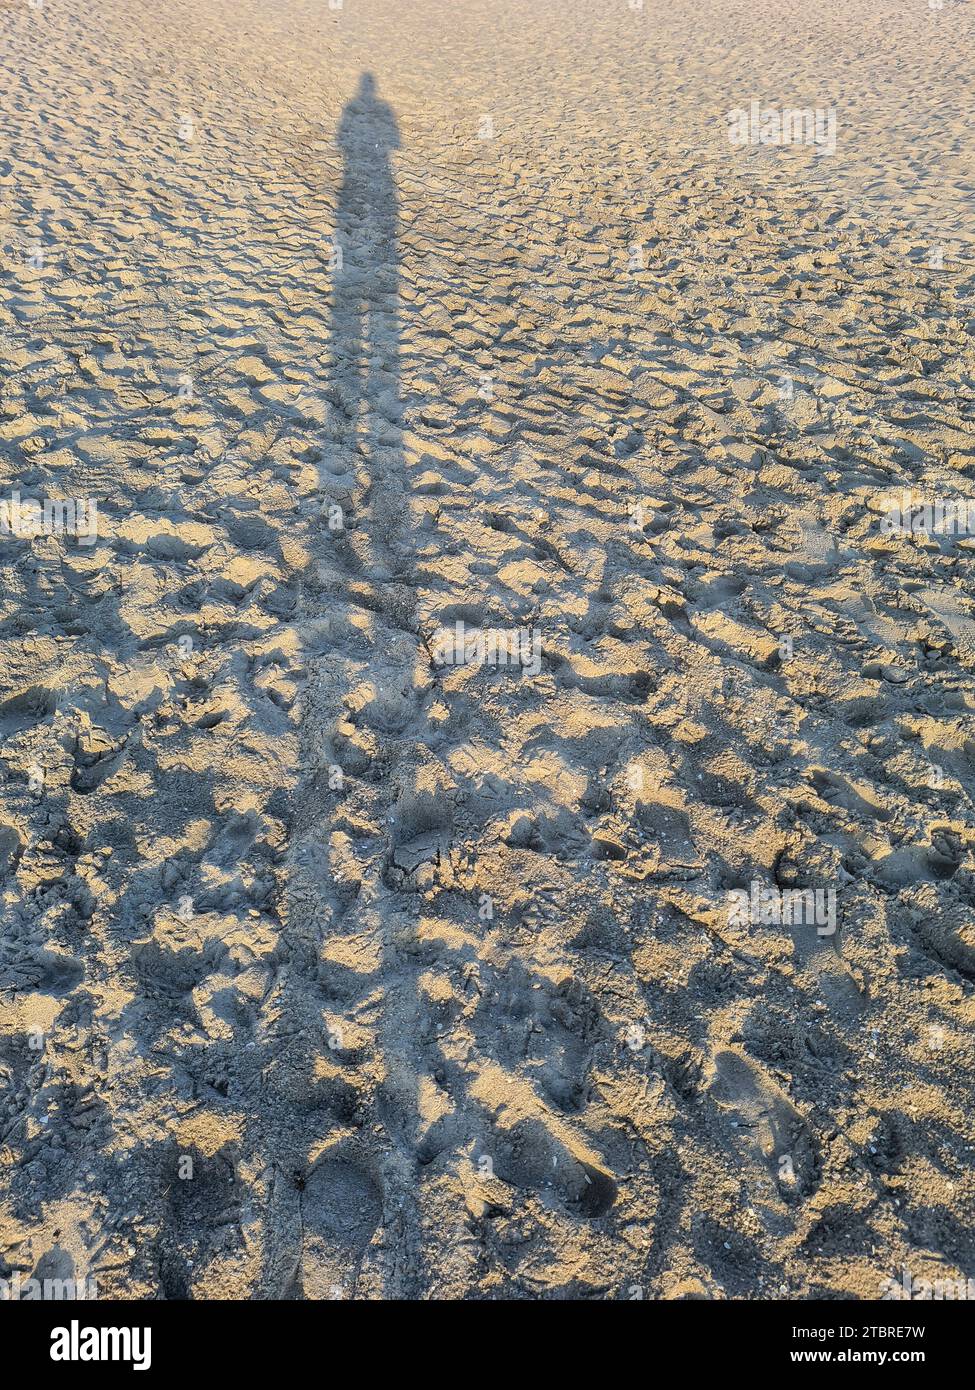 Deutschland, Mecklenburg-Vorpommern, Halbinsel Fischland-Darß-Zingst, Ferienort Prerow, abendliche Atmosphäre am Sandstrand, lange Schattenfigur auf Sand Stockfoto